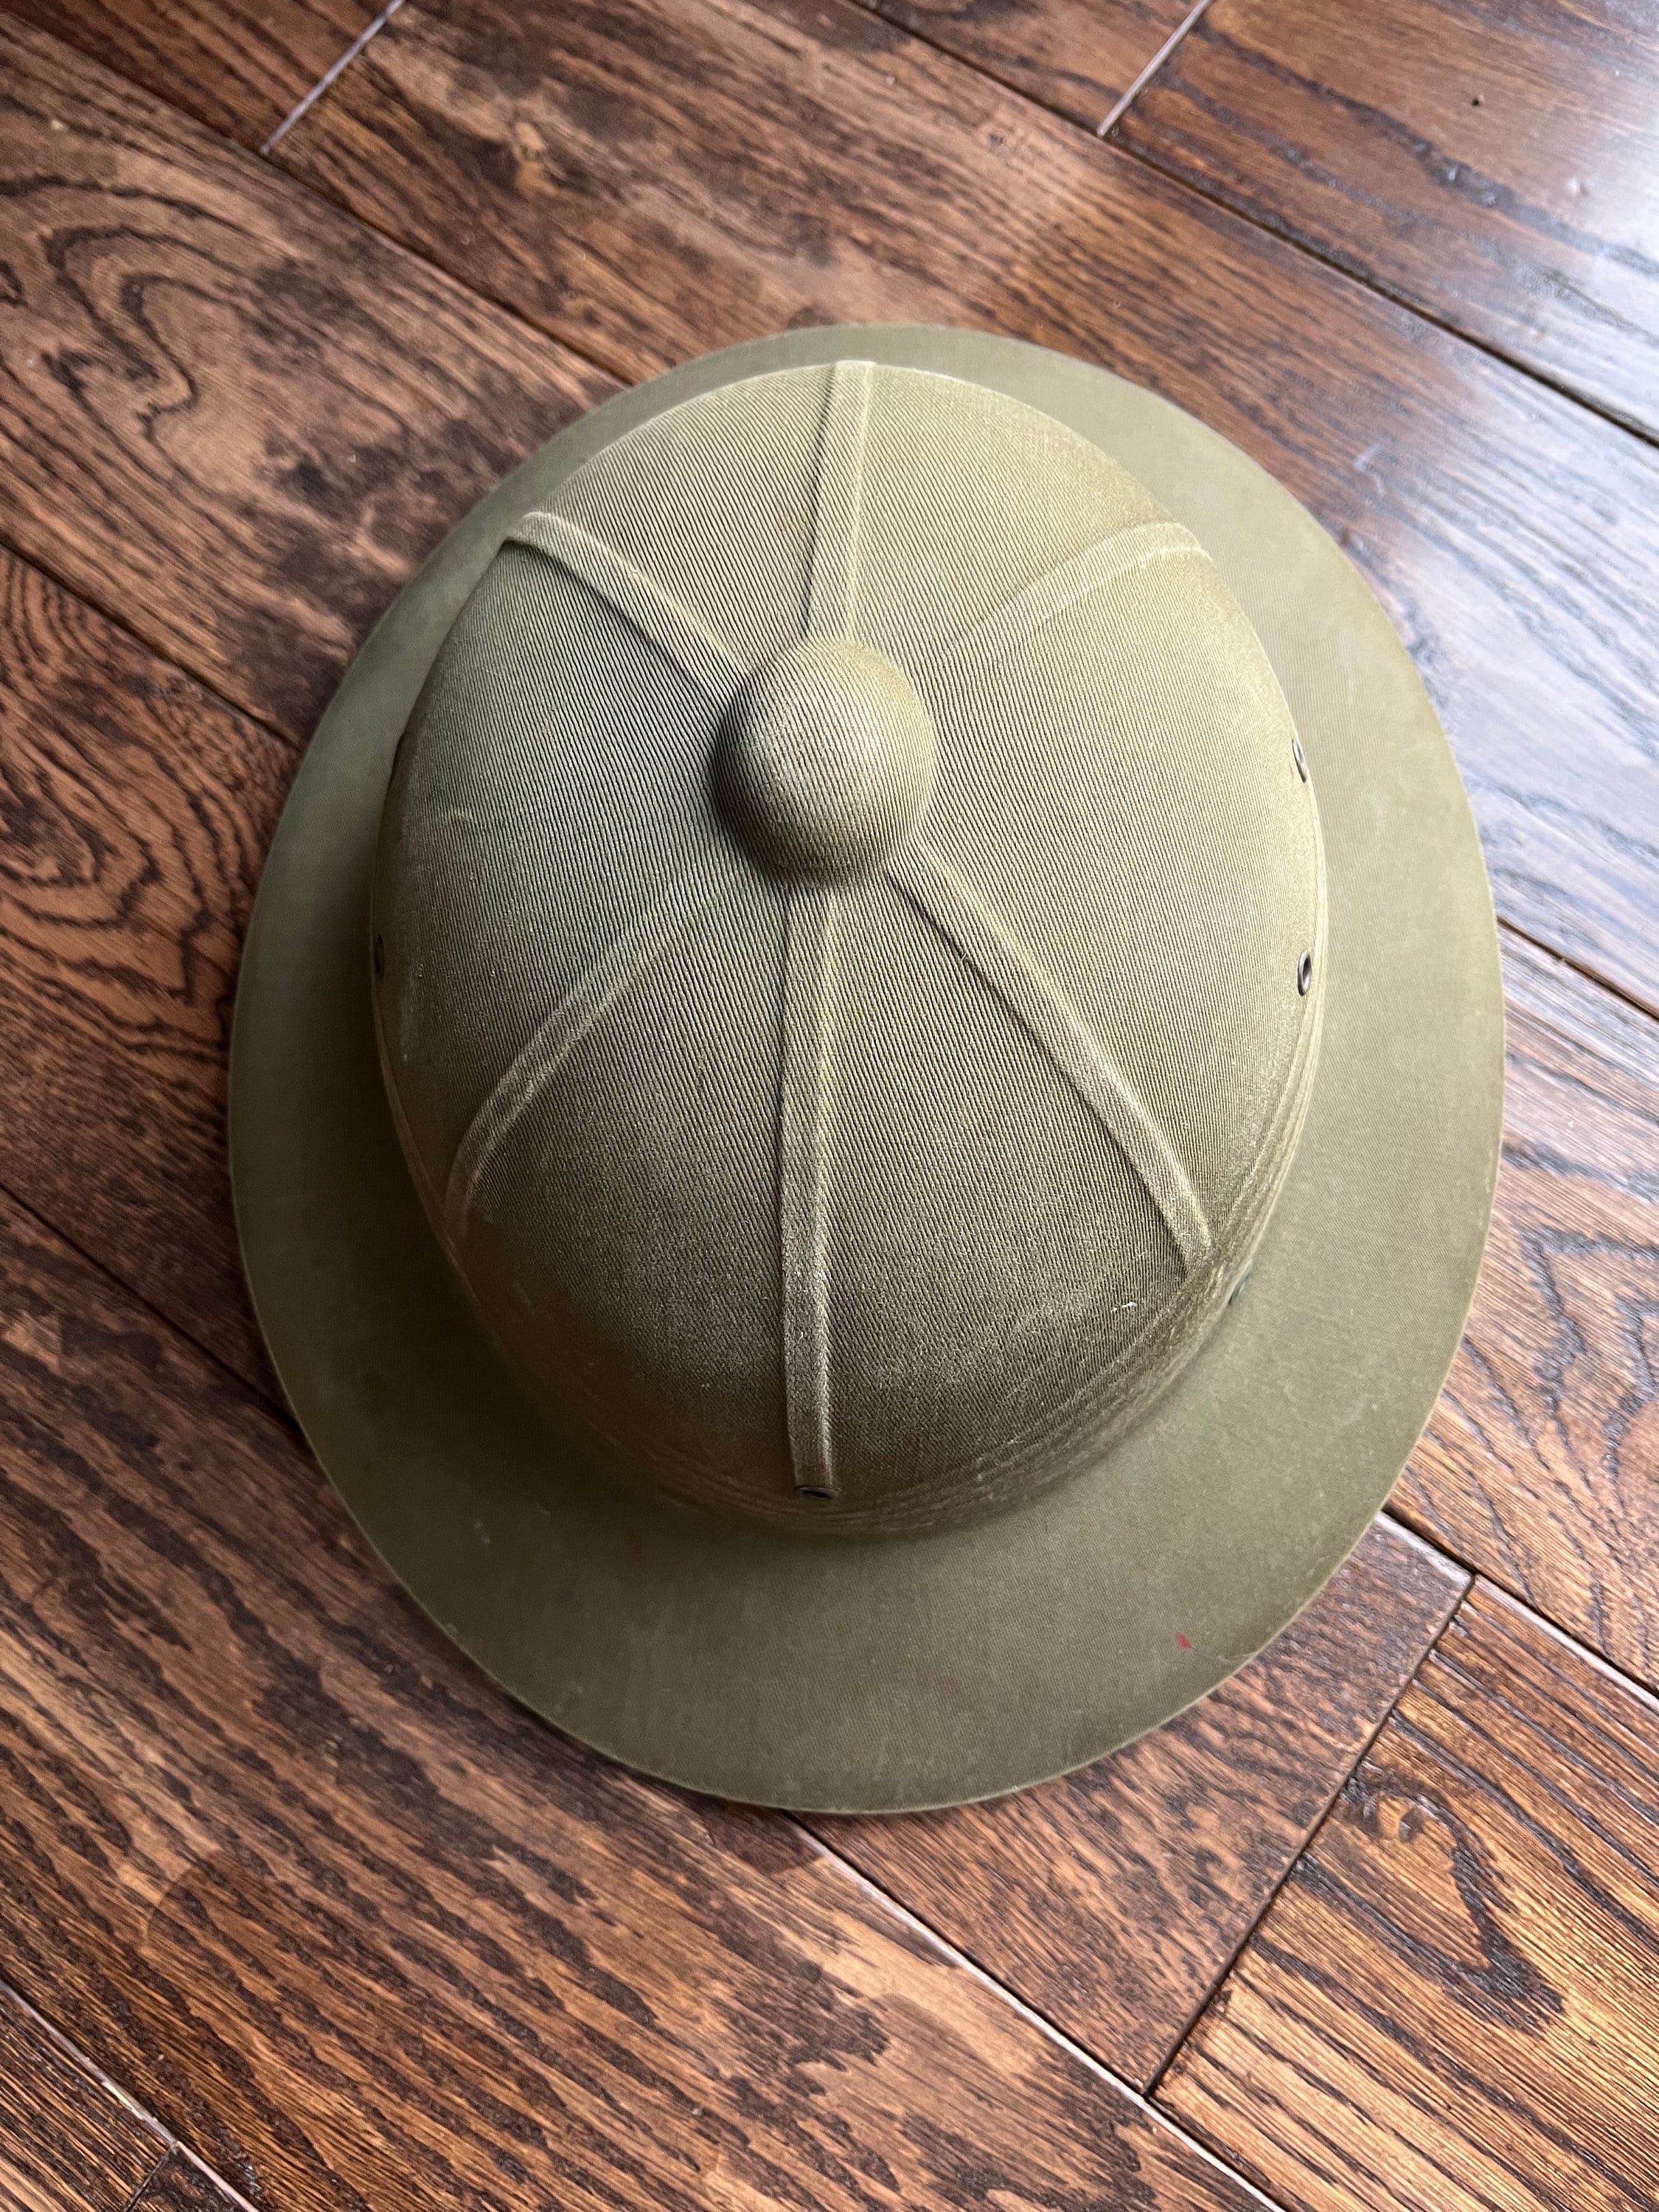 Military Safari Hat 